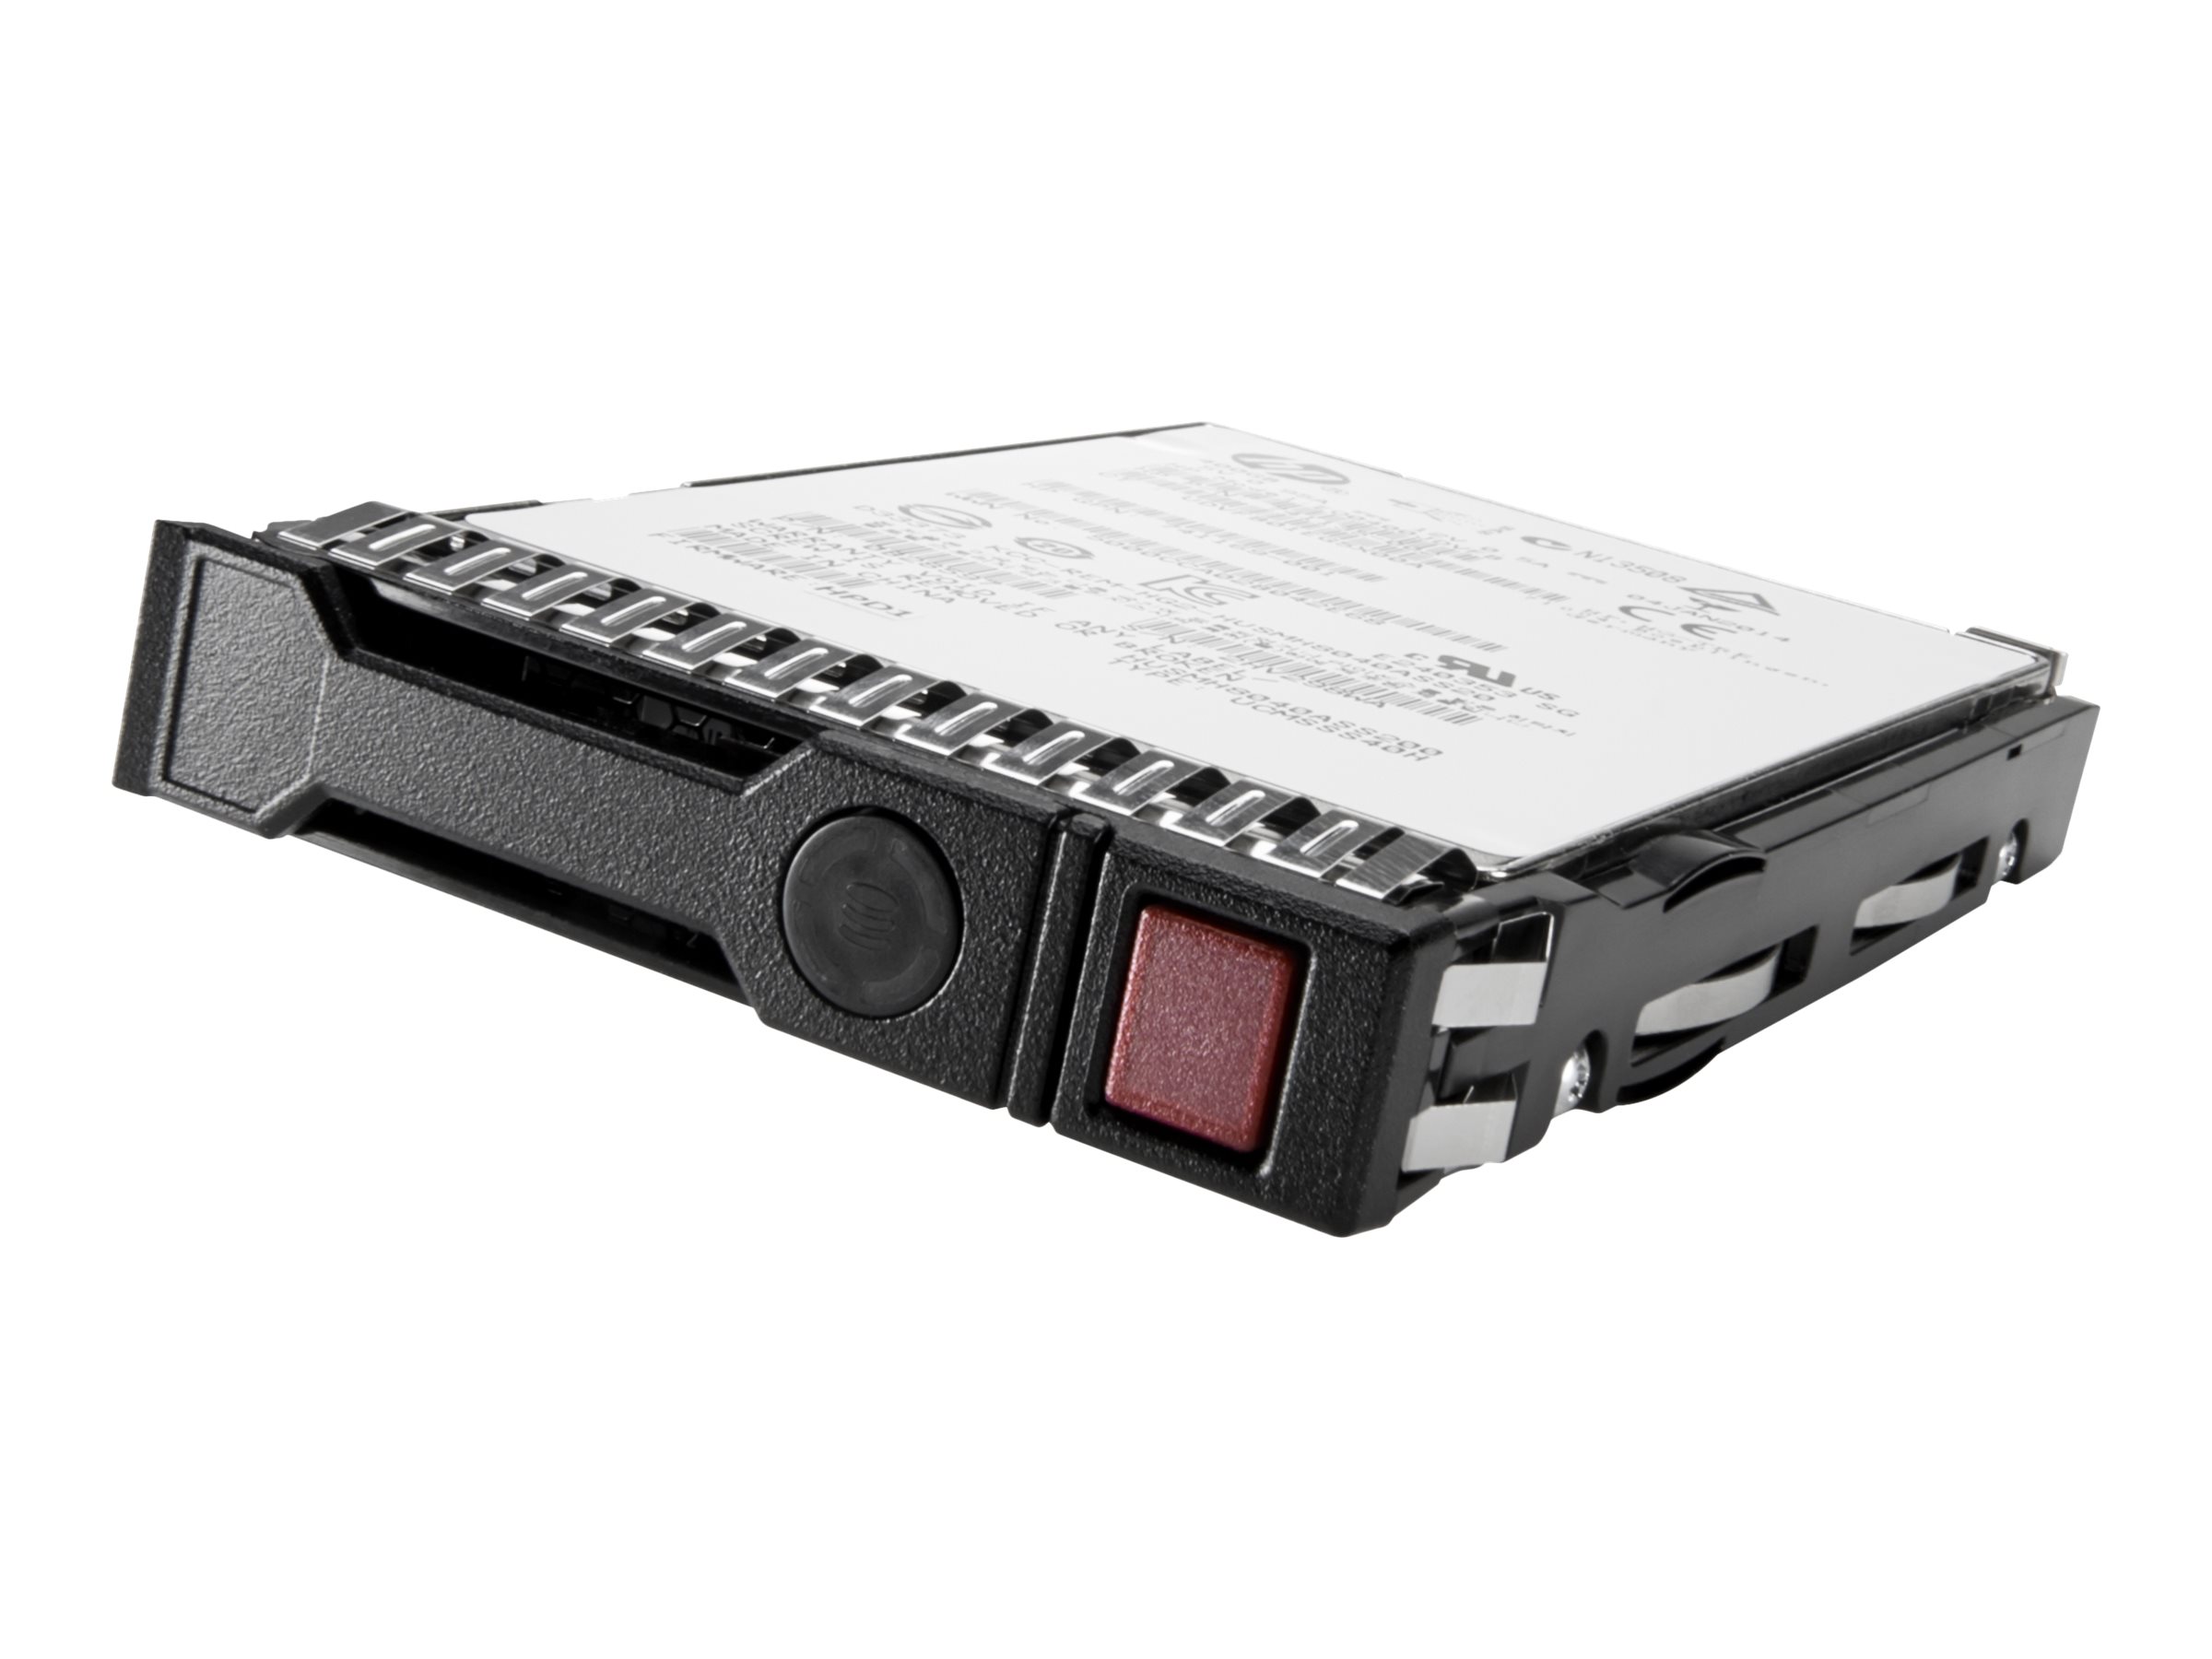 HPE 800GB SAS 12G MU LFF LPC DS SSD (872380-B21) - REFURB